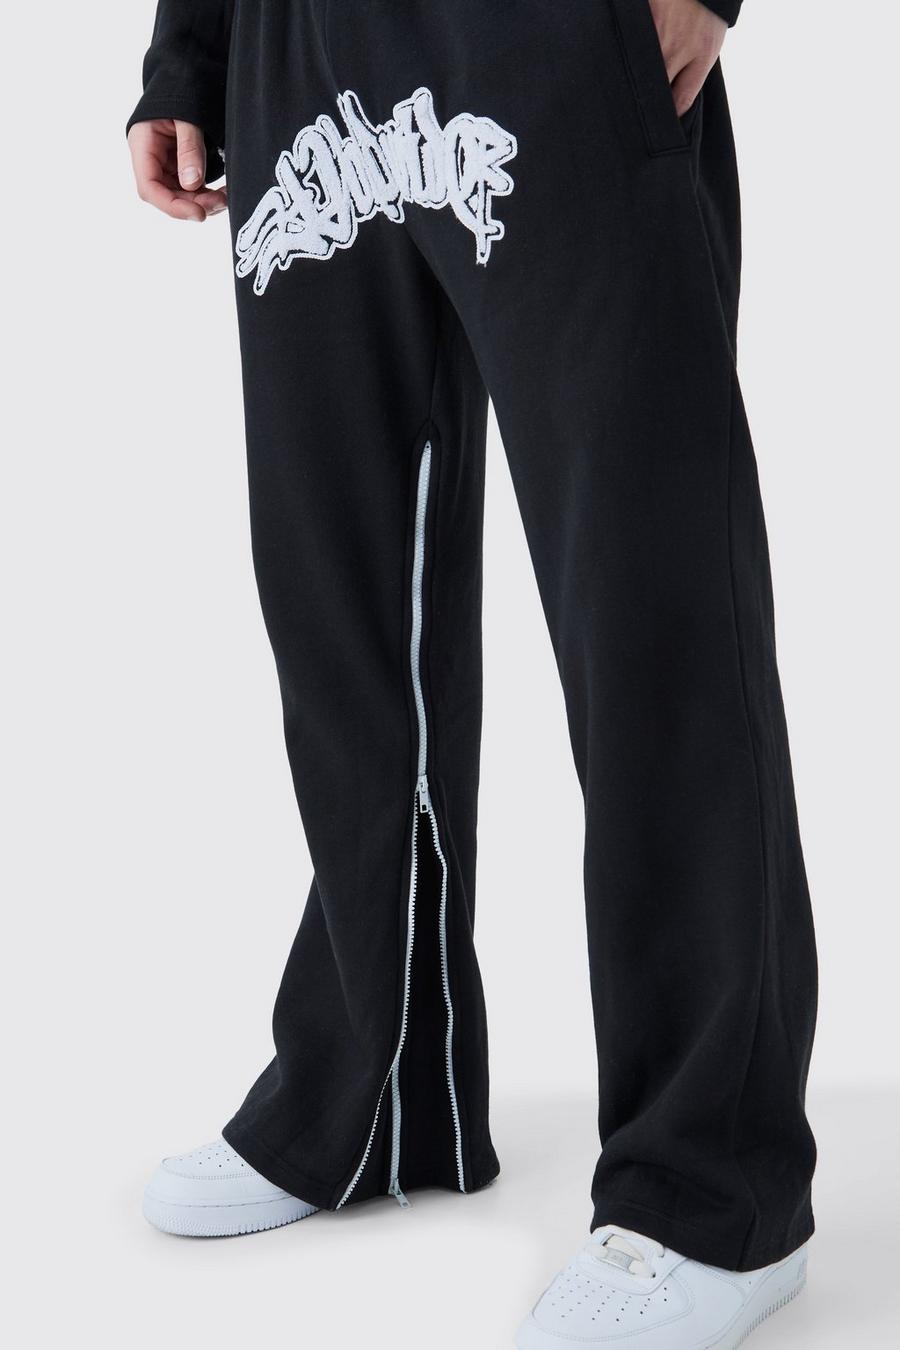 Pantaloni tuta Worldwide con inserti, applique e zip, Black image number 1